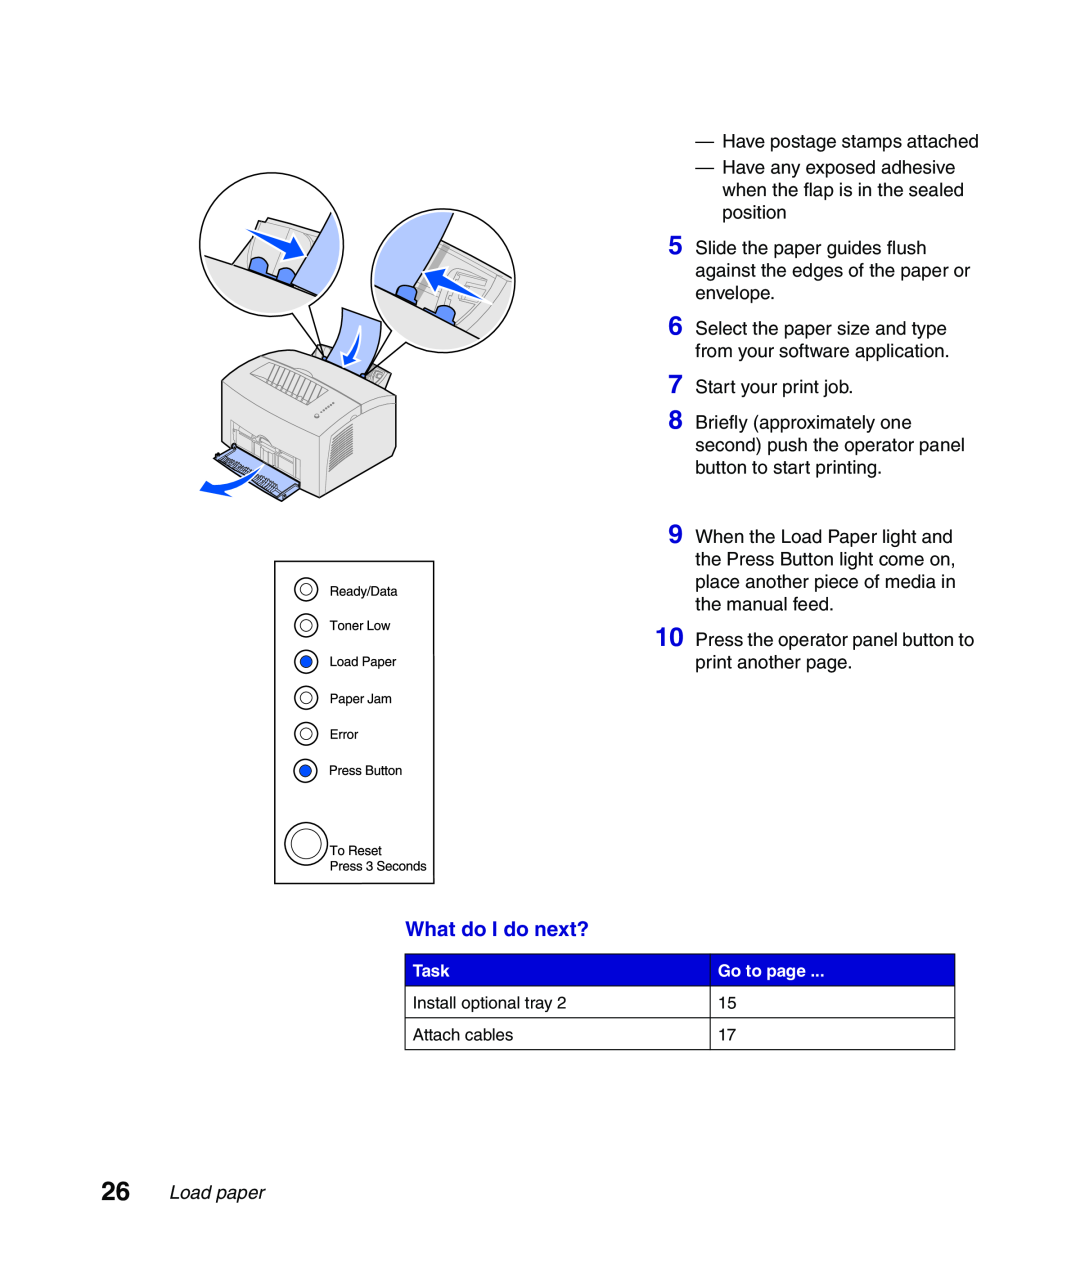 Lexmark Infoprint 1116 setup guide What do I do next?, Load paper 